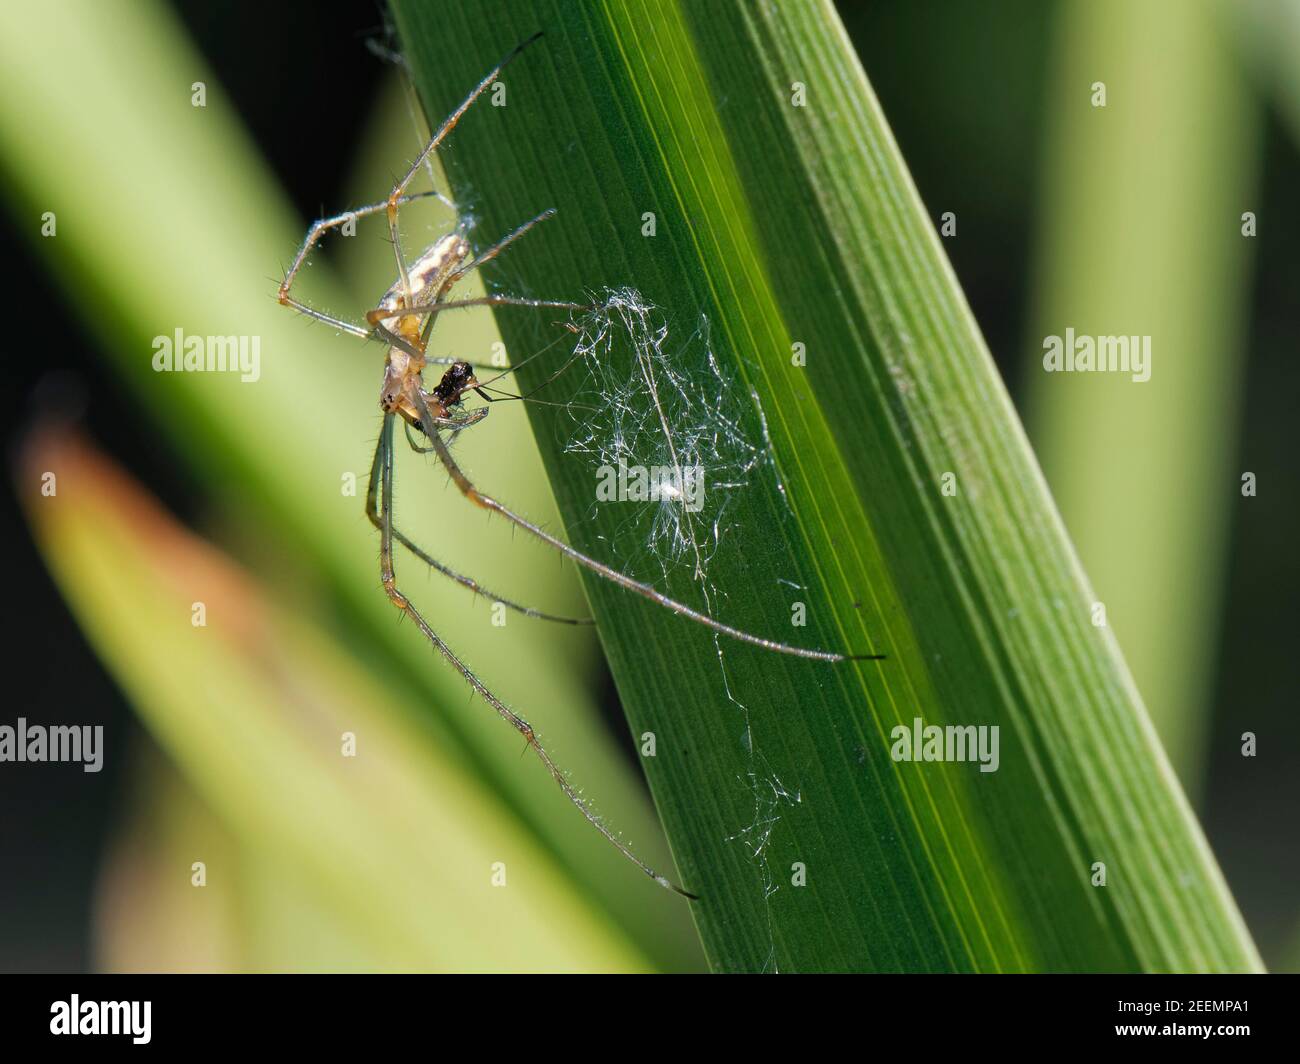 Orbtejedor de jawed largo / araña de estiramiento común (Tetragnatha extensa) con una pequeña presa de insectos en una hoja de junco de la orilla del río, Wiltshire, Reino Unido, mayo. Foto de stock